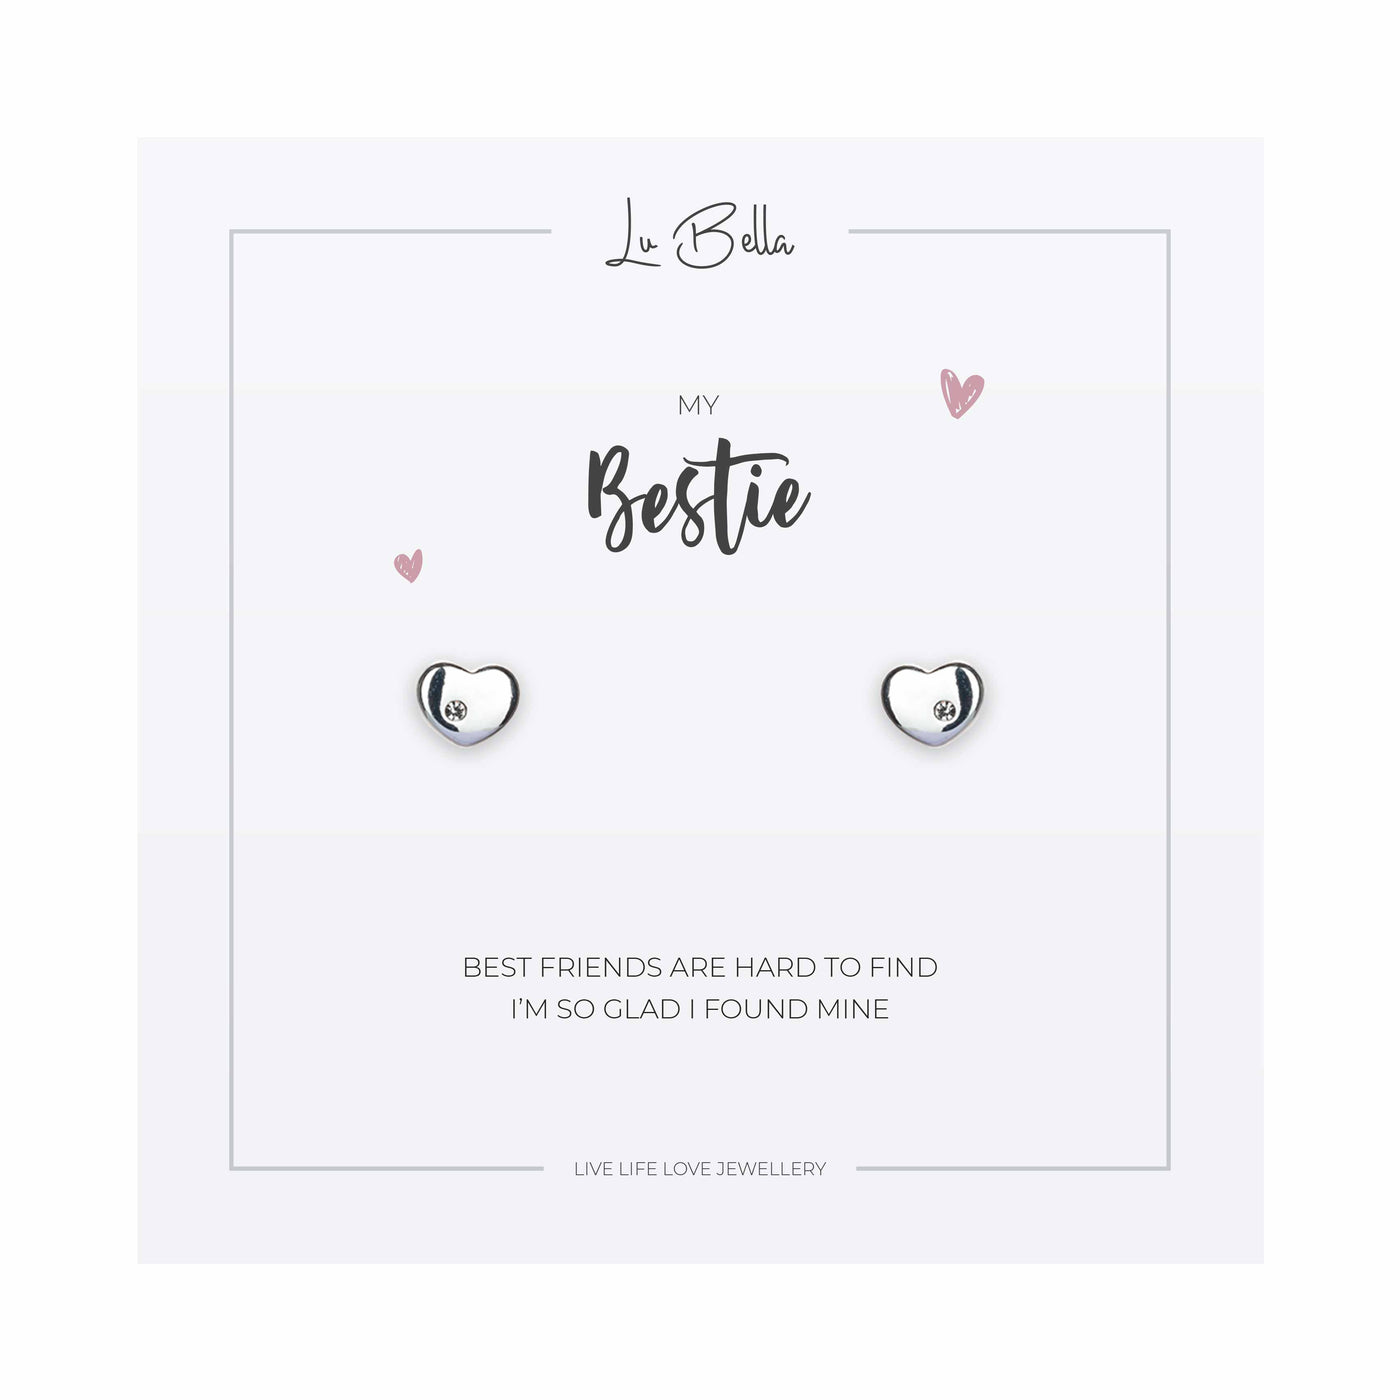 Lu Bella - My Bestie Sentiments Earrings